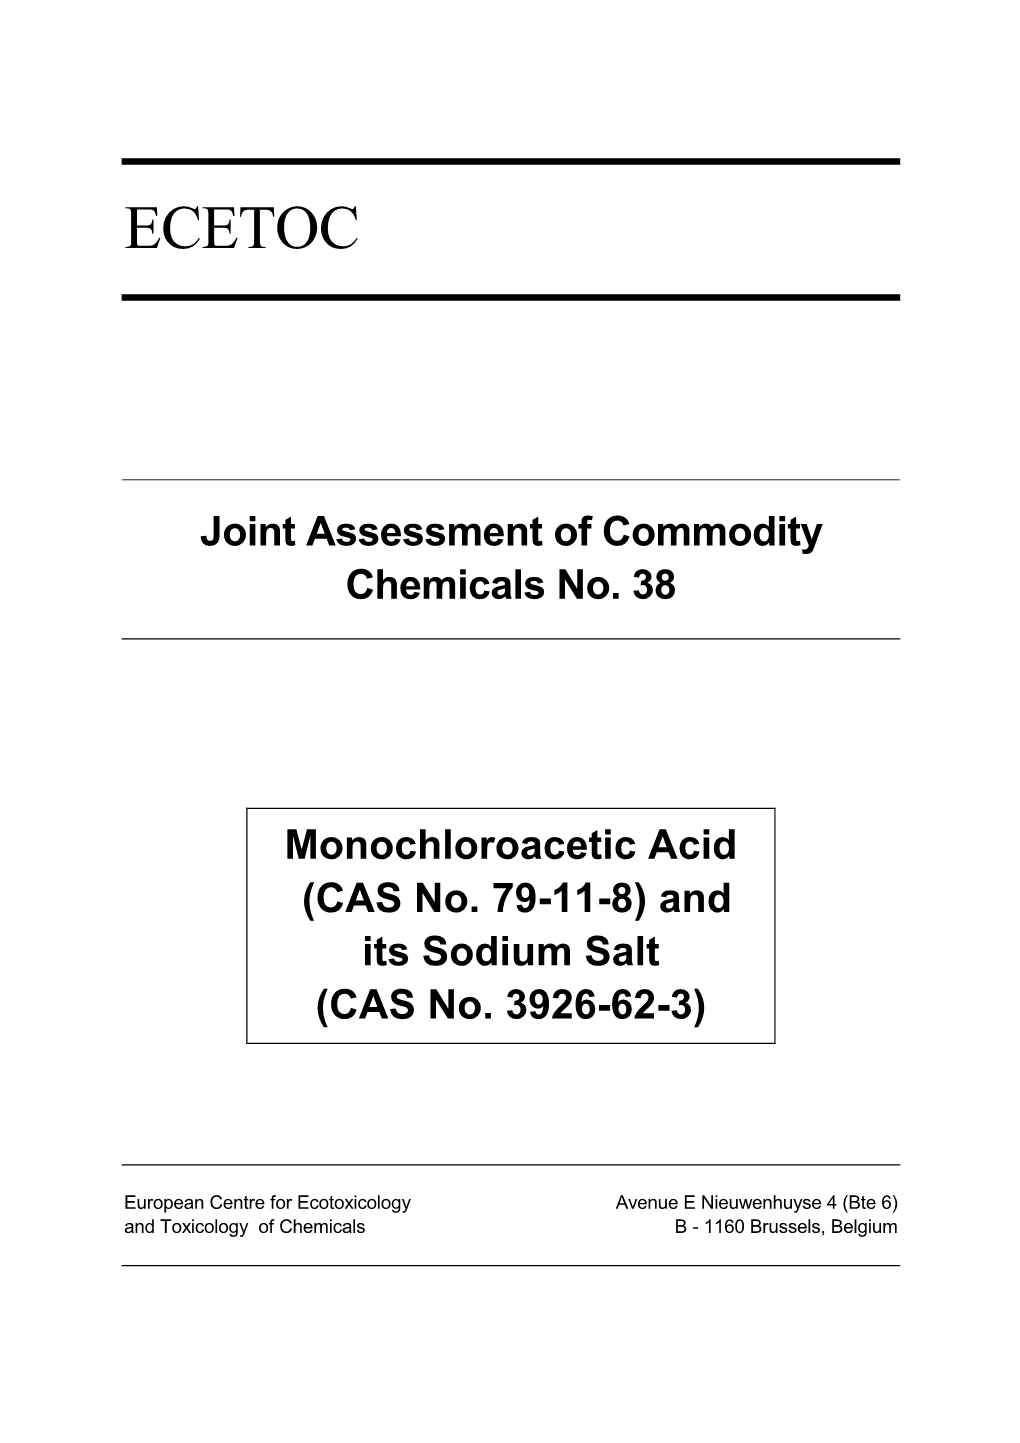 Monochloroacetic Acid (CAS No